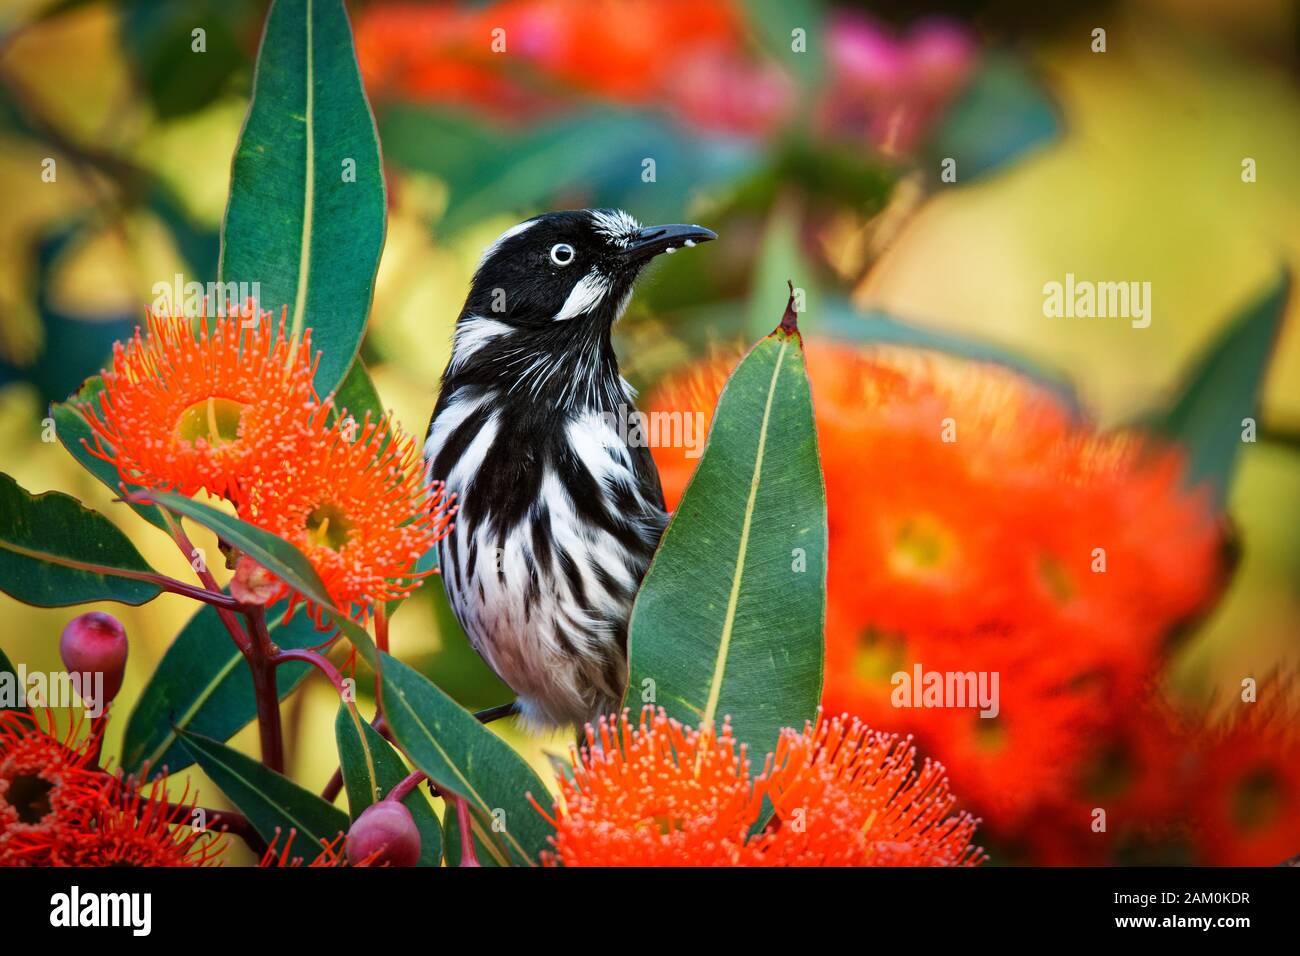 New Holland Honeyeater - Phylidonyris novaehollandiae - australischer Vogel mit gelber Farbe in den Flügeln, der von der roten Blüte ernährt wird. Australien, Tasmanien. Stockfoto